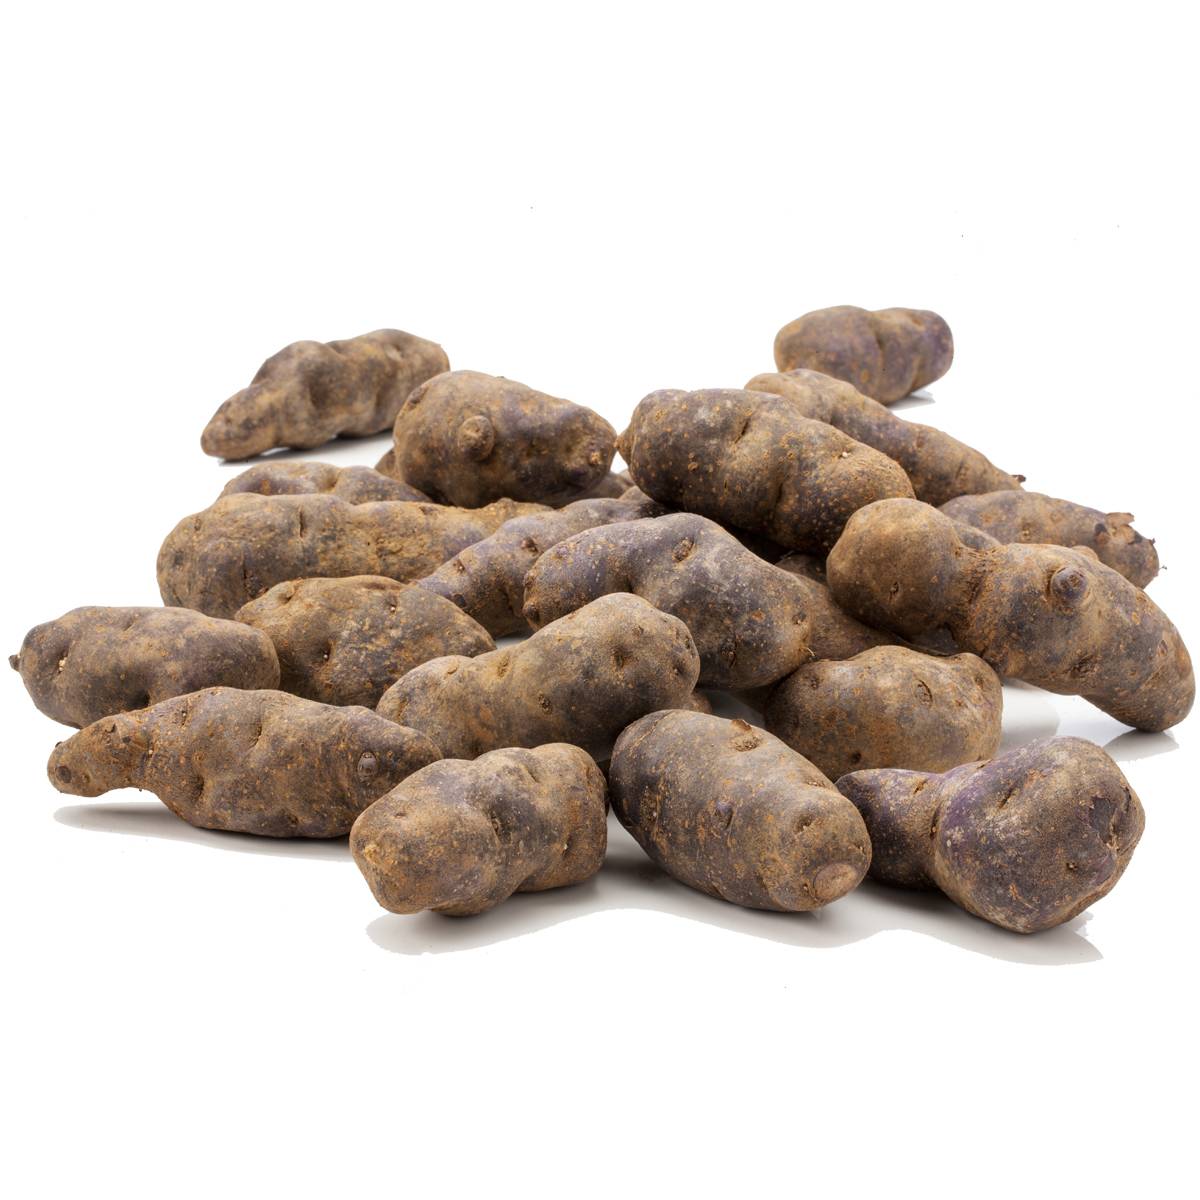 Purè di patate viola Lady Viola Vitelotte - Prodotti alimentari biologici, selezione  patate viola gourmet, legumi e cereali - Perle della Tuscia